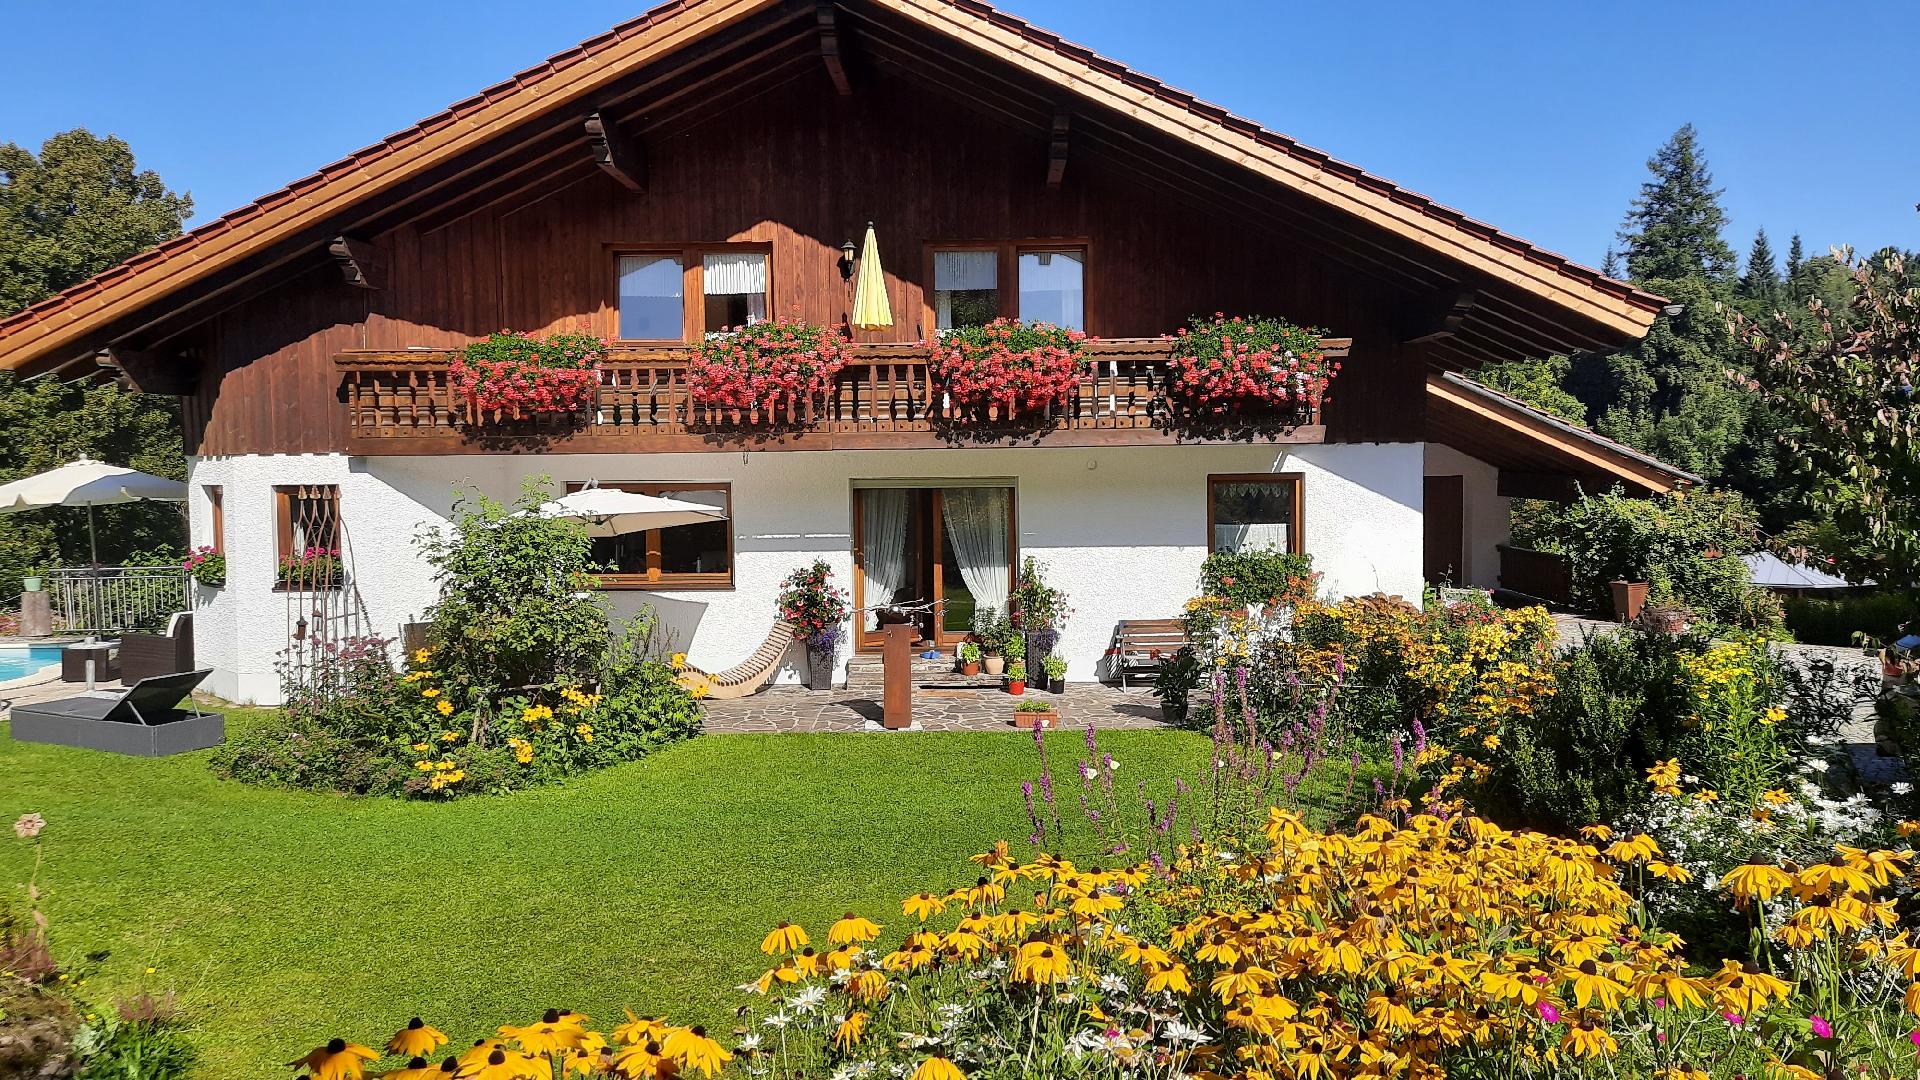 Ferienwohnung für 2 Personen ca. 58 m² i Ferienhaus in Deutschland